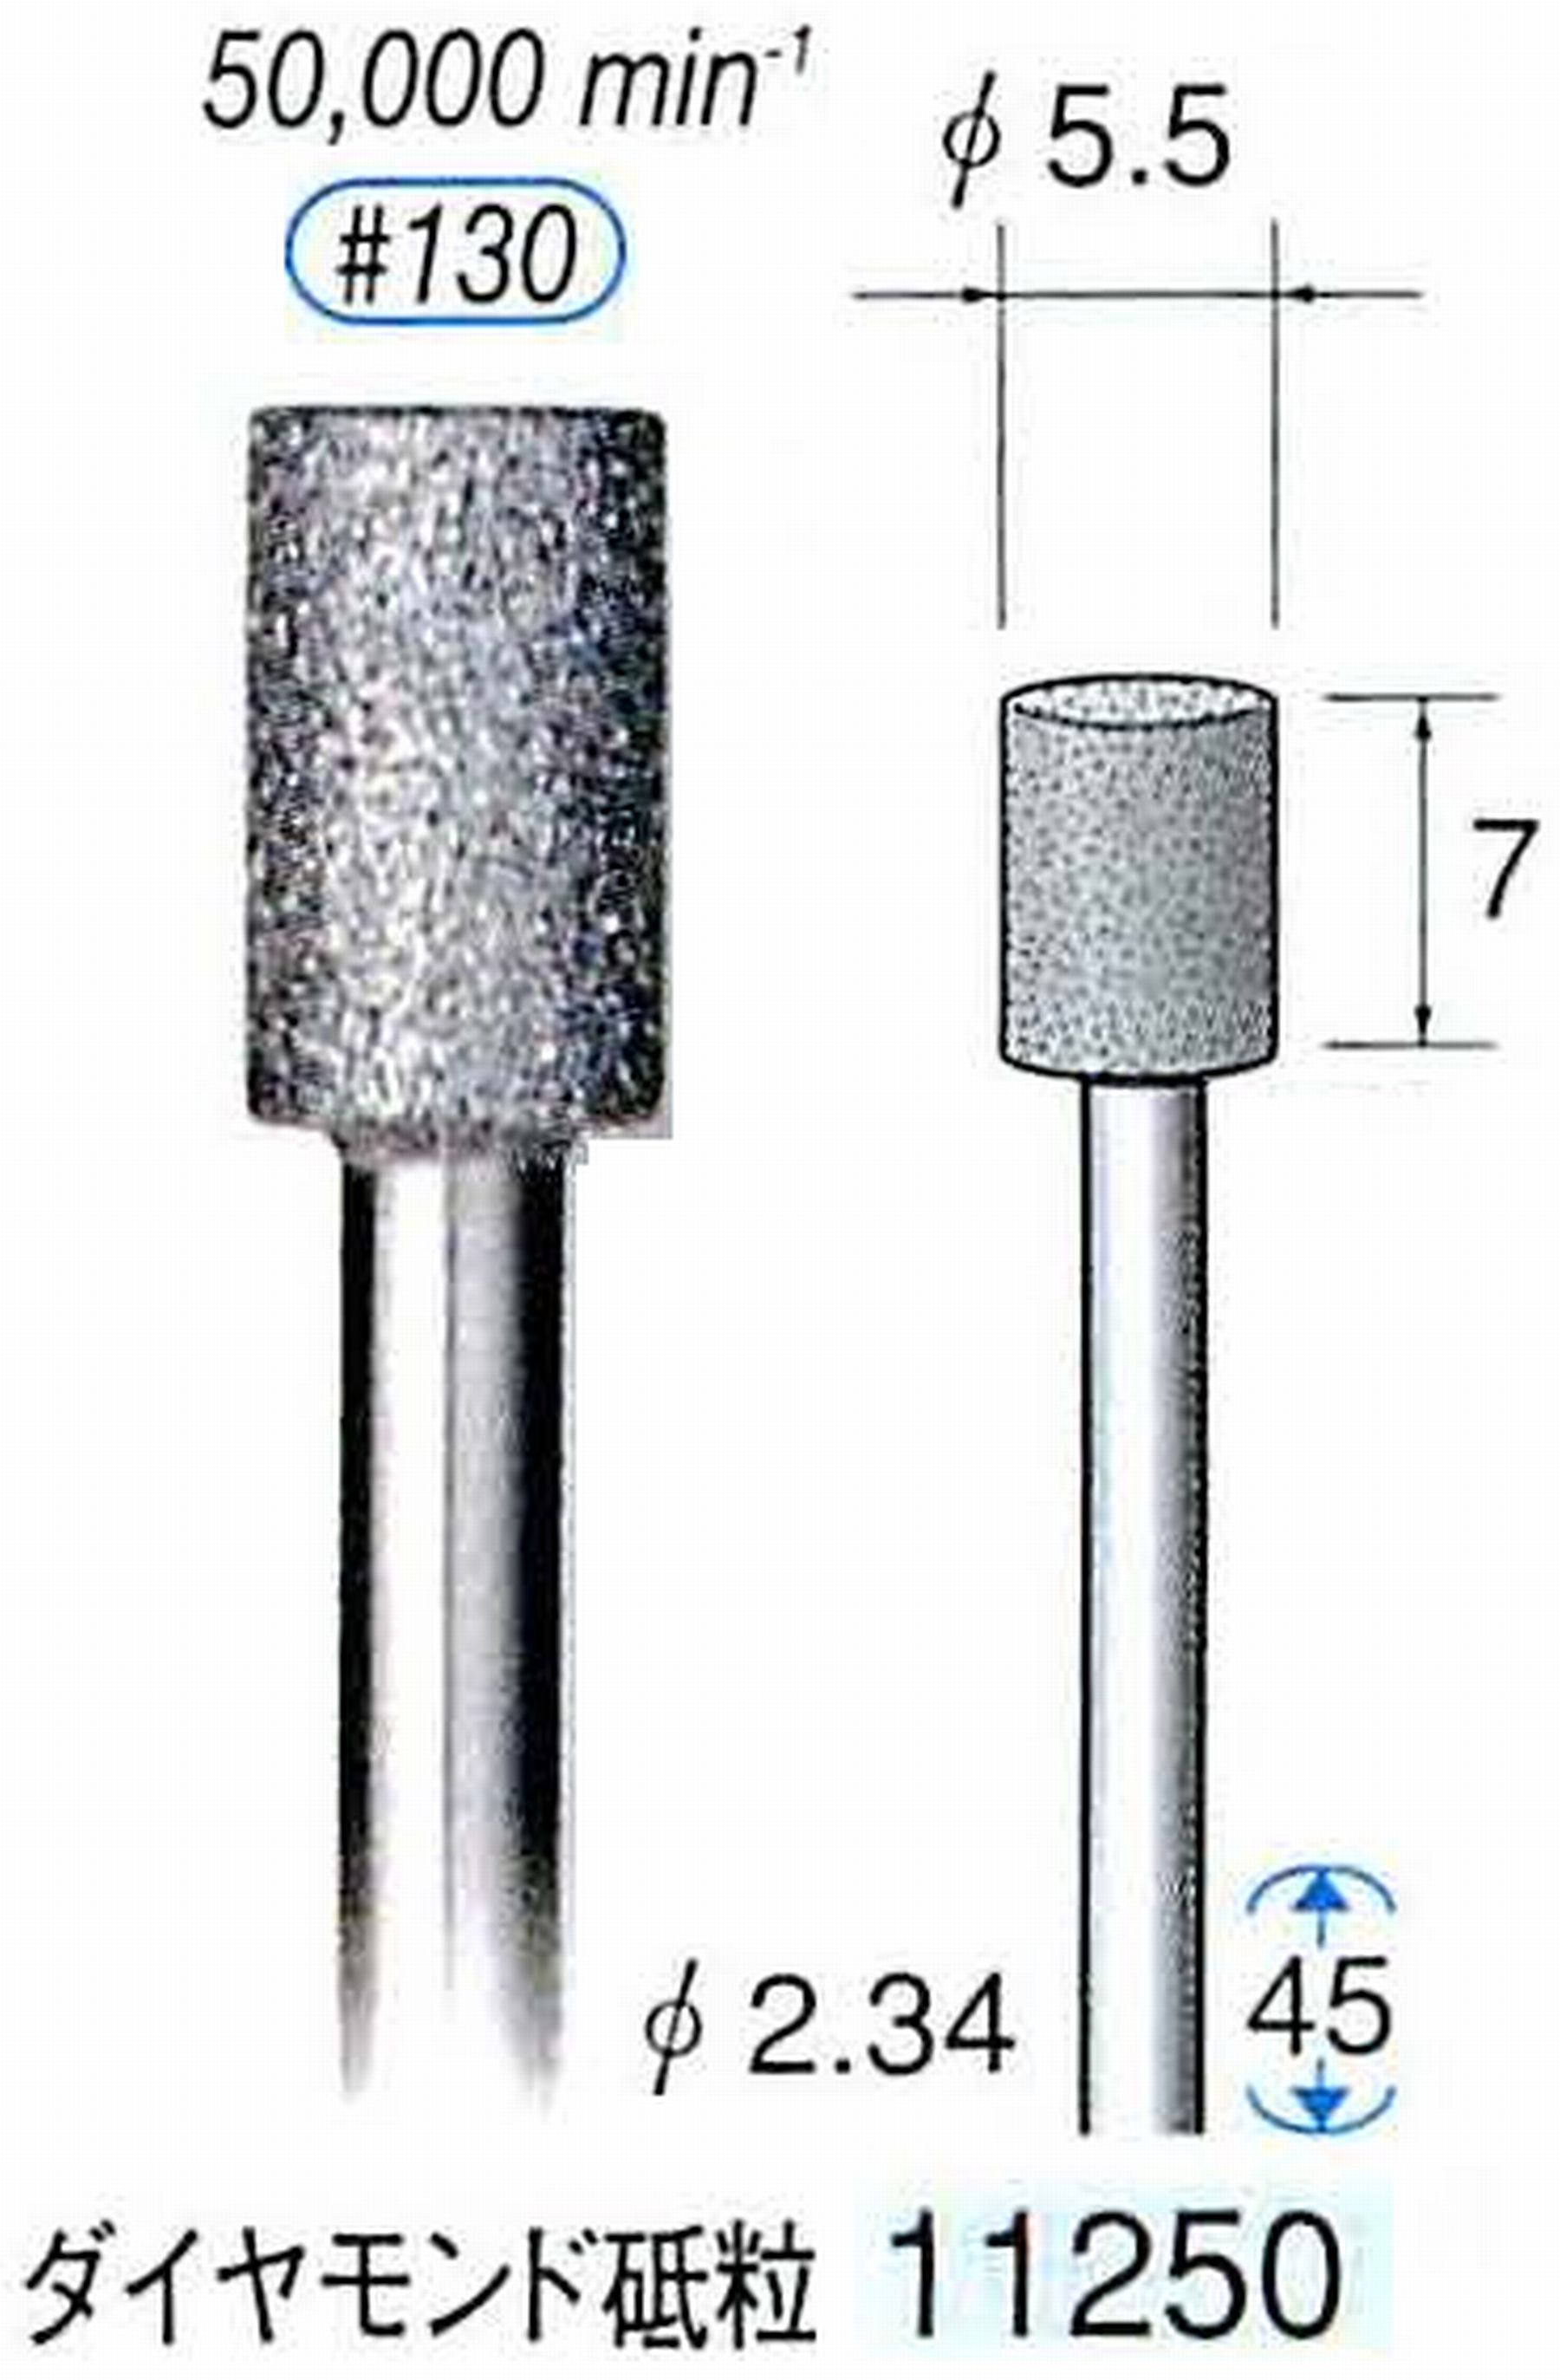 ナカニシ/NAKANISHI 電着ダイヤモンドバー ダイヤモンド砥粒 軸径(シャンク)φ2.34mm 11250